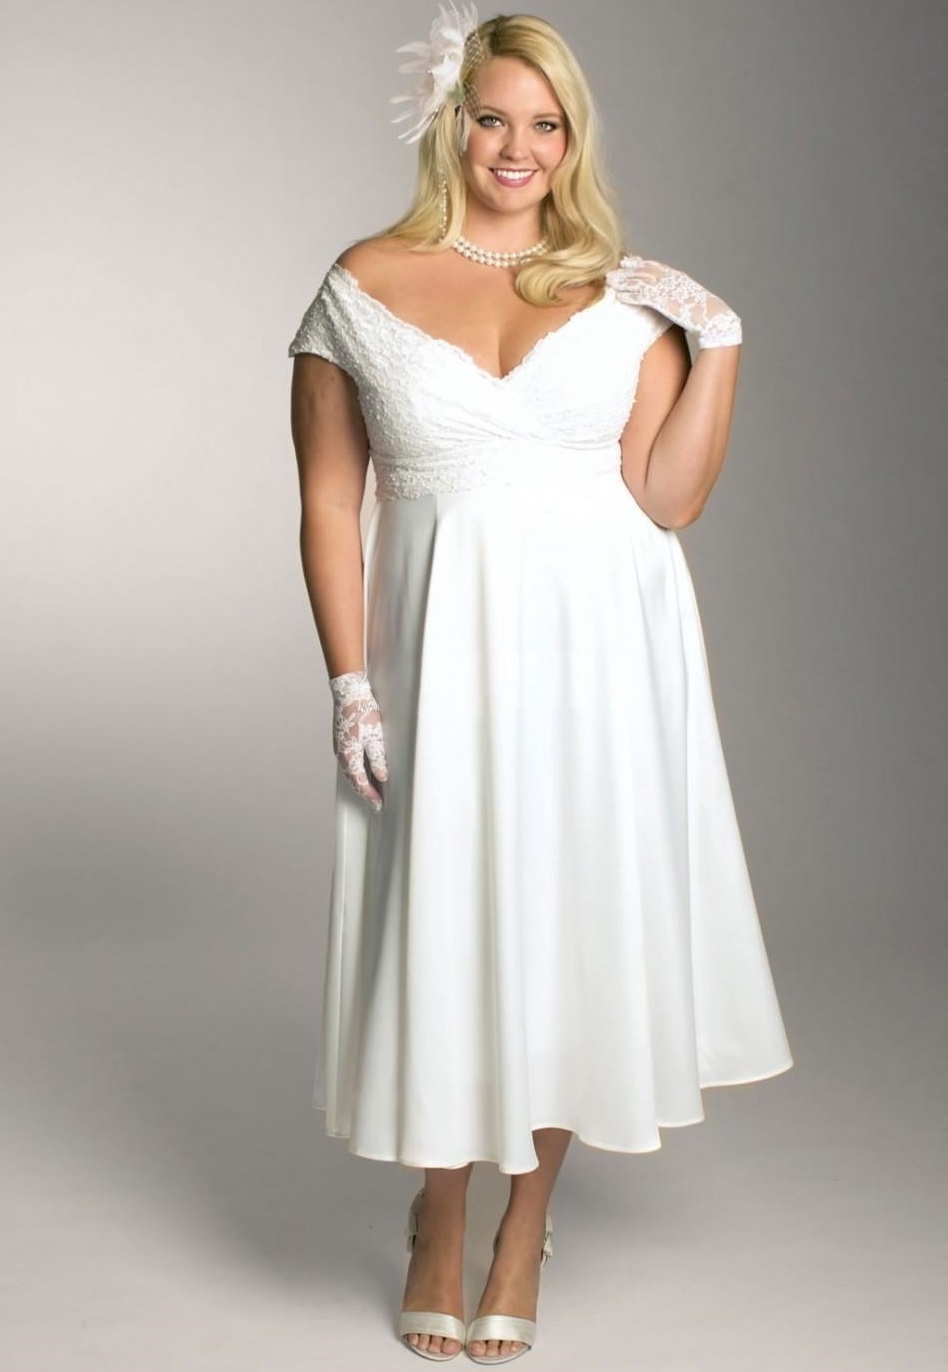 Свадебные платья плюс сайз 56-58 размер